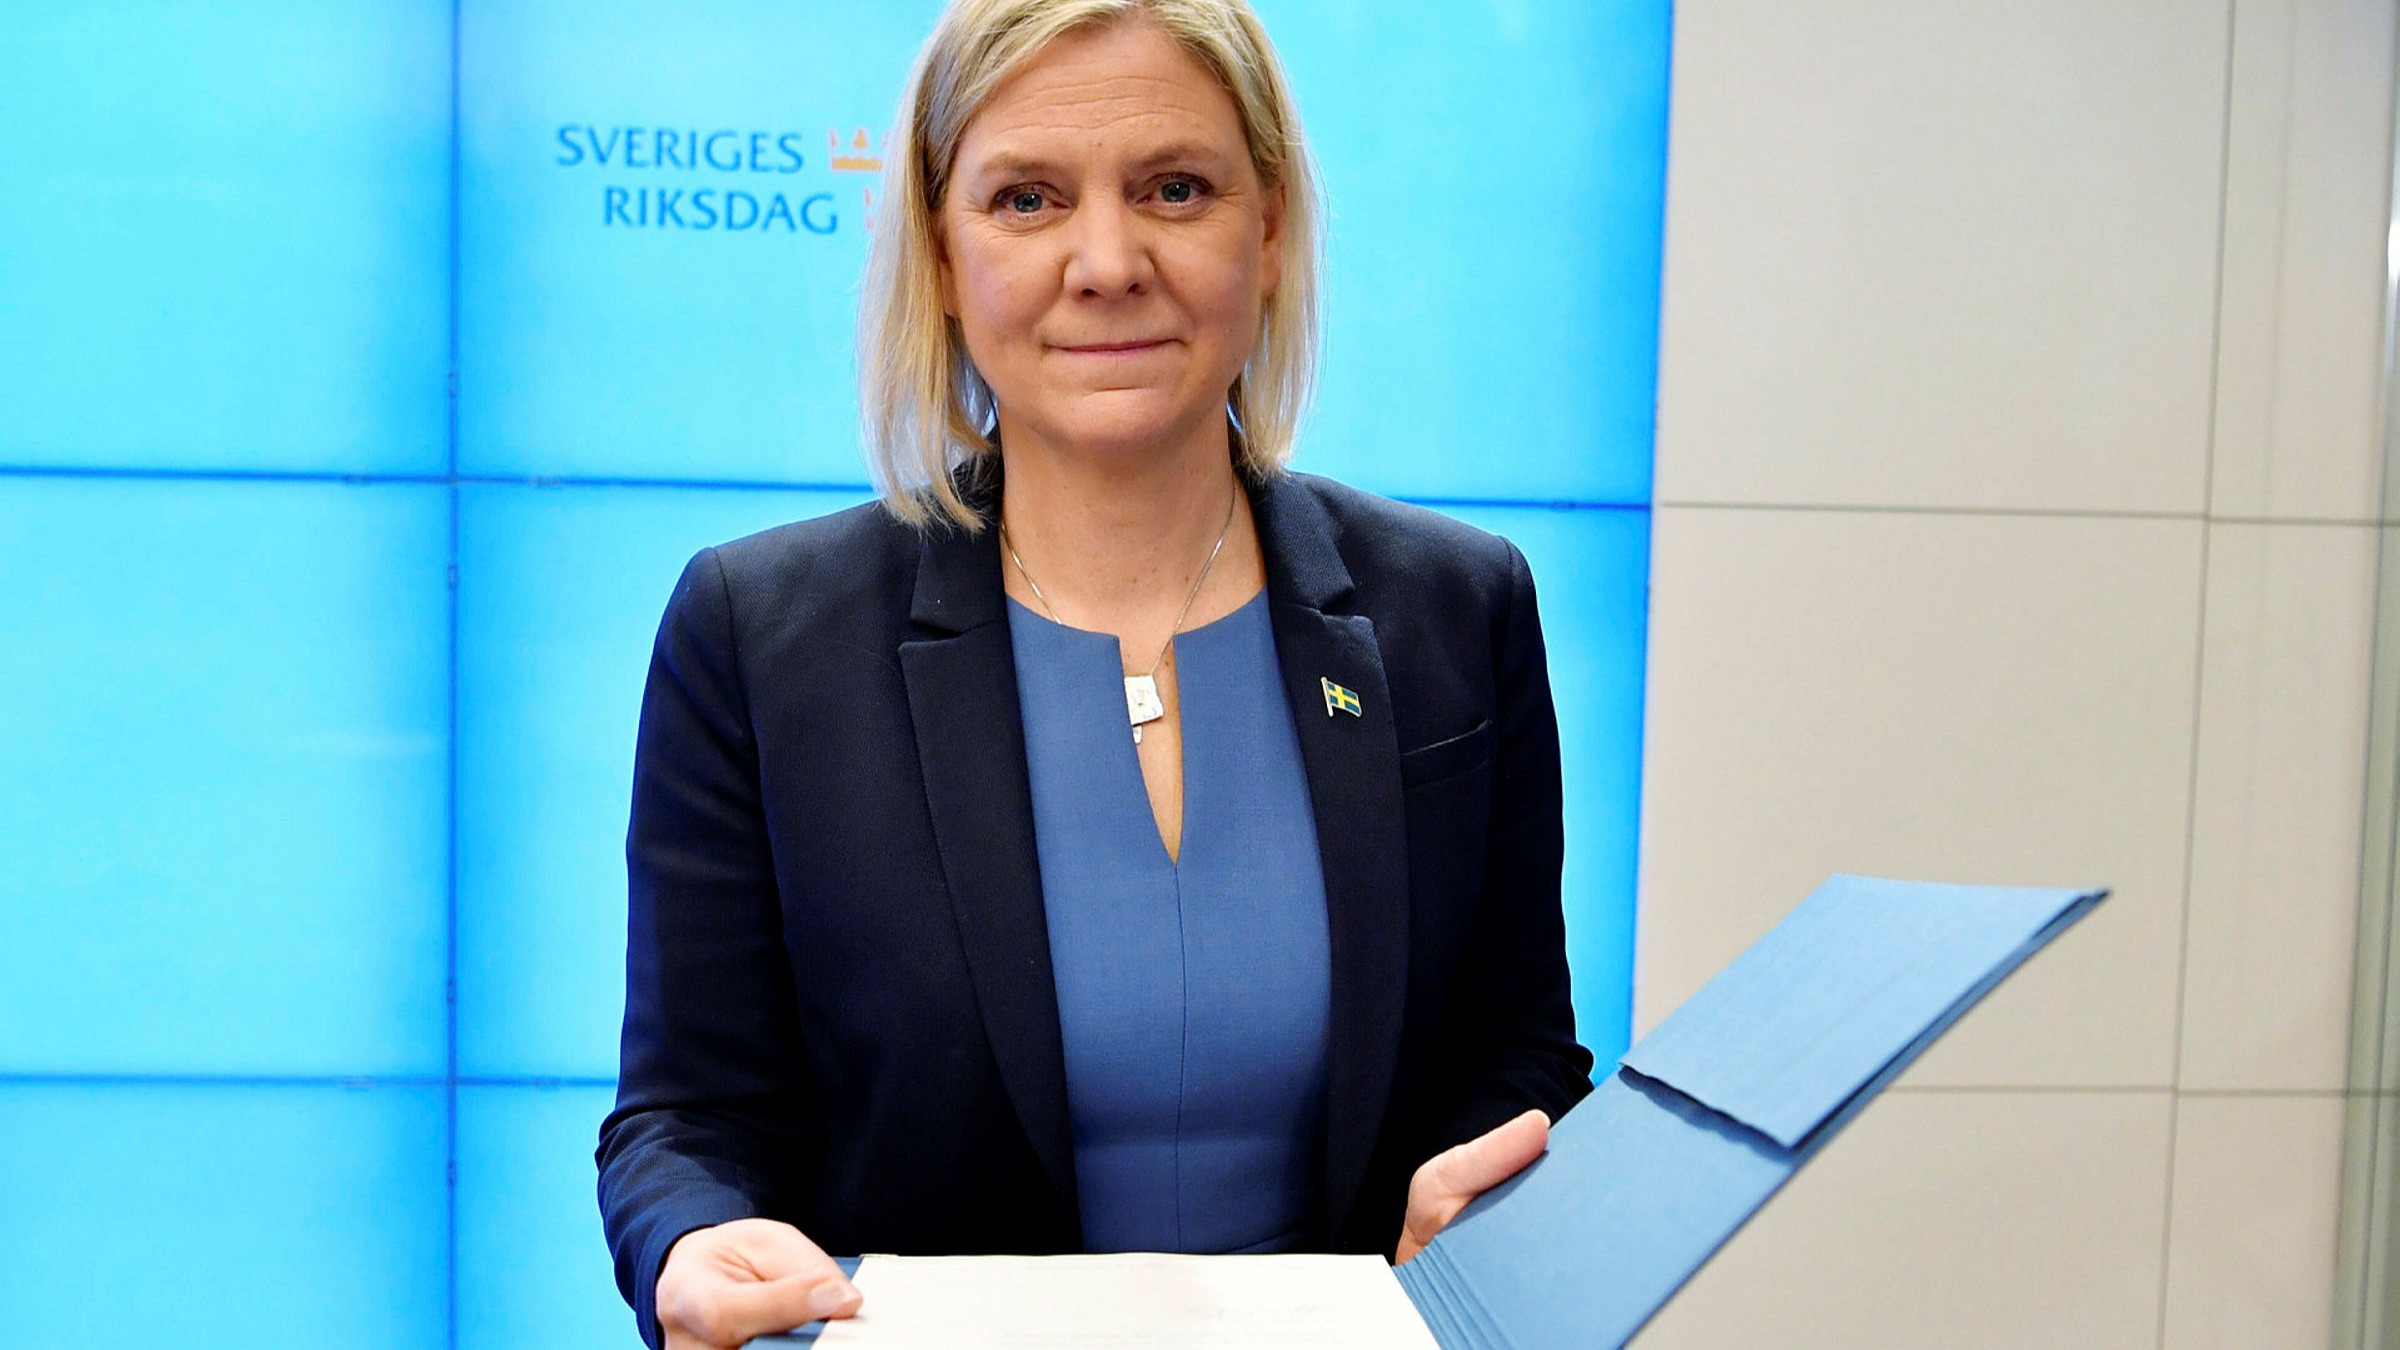 Շվեդիայի վարչապետը ընտրվելուց մի քանի ժամ անց հրաժարական է ներկայացրել